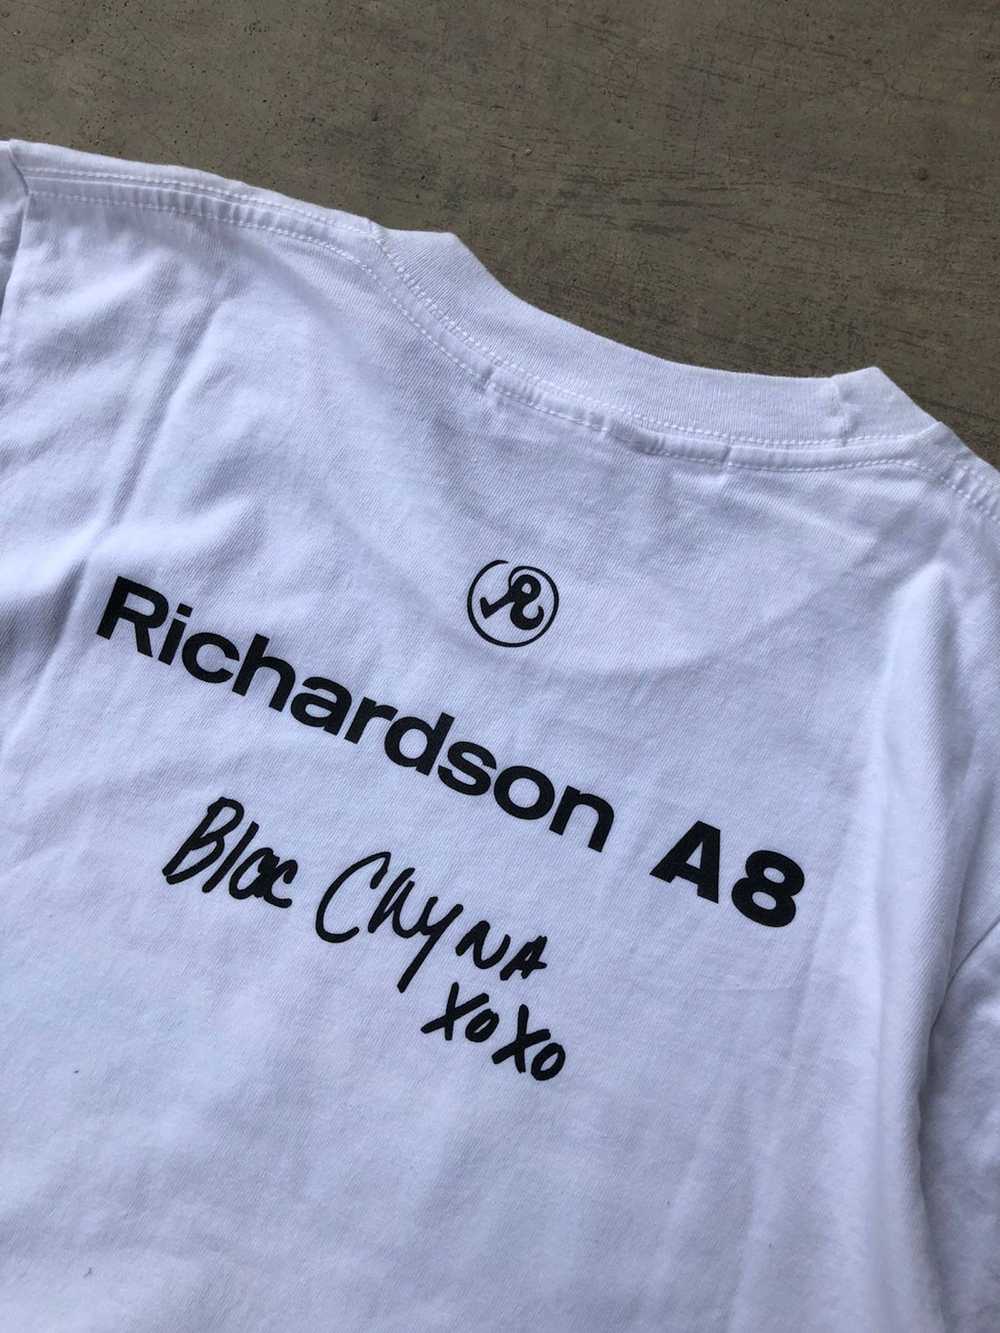 Richardson × Streetwear Richardson A8 Blac Chyna - image 3